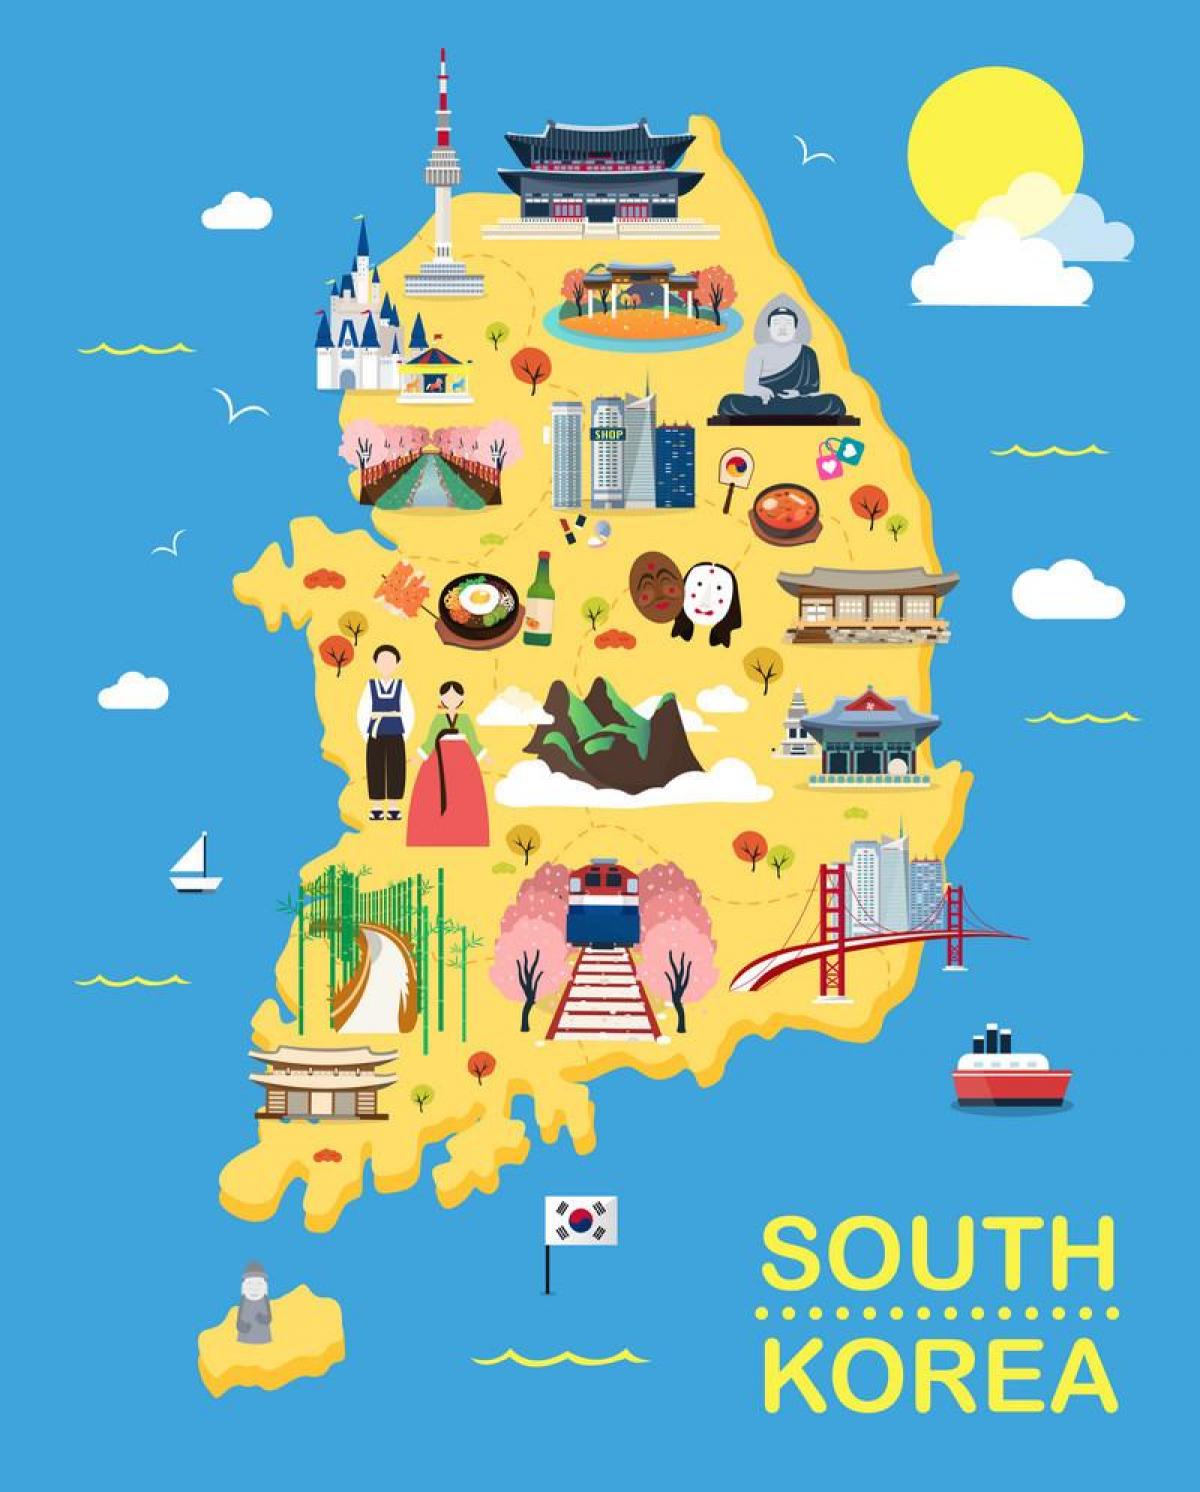 Südkorea (ROK) touristische Attraktionen Karte